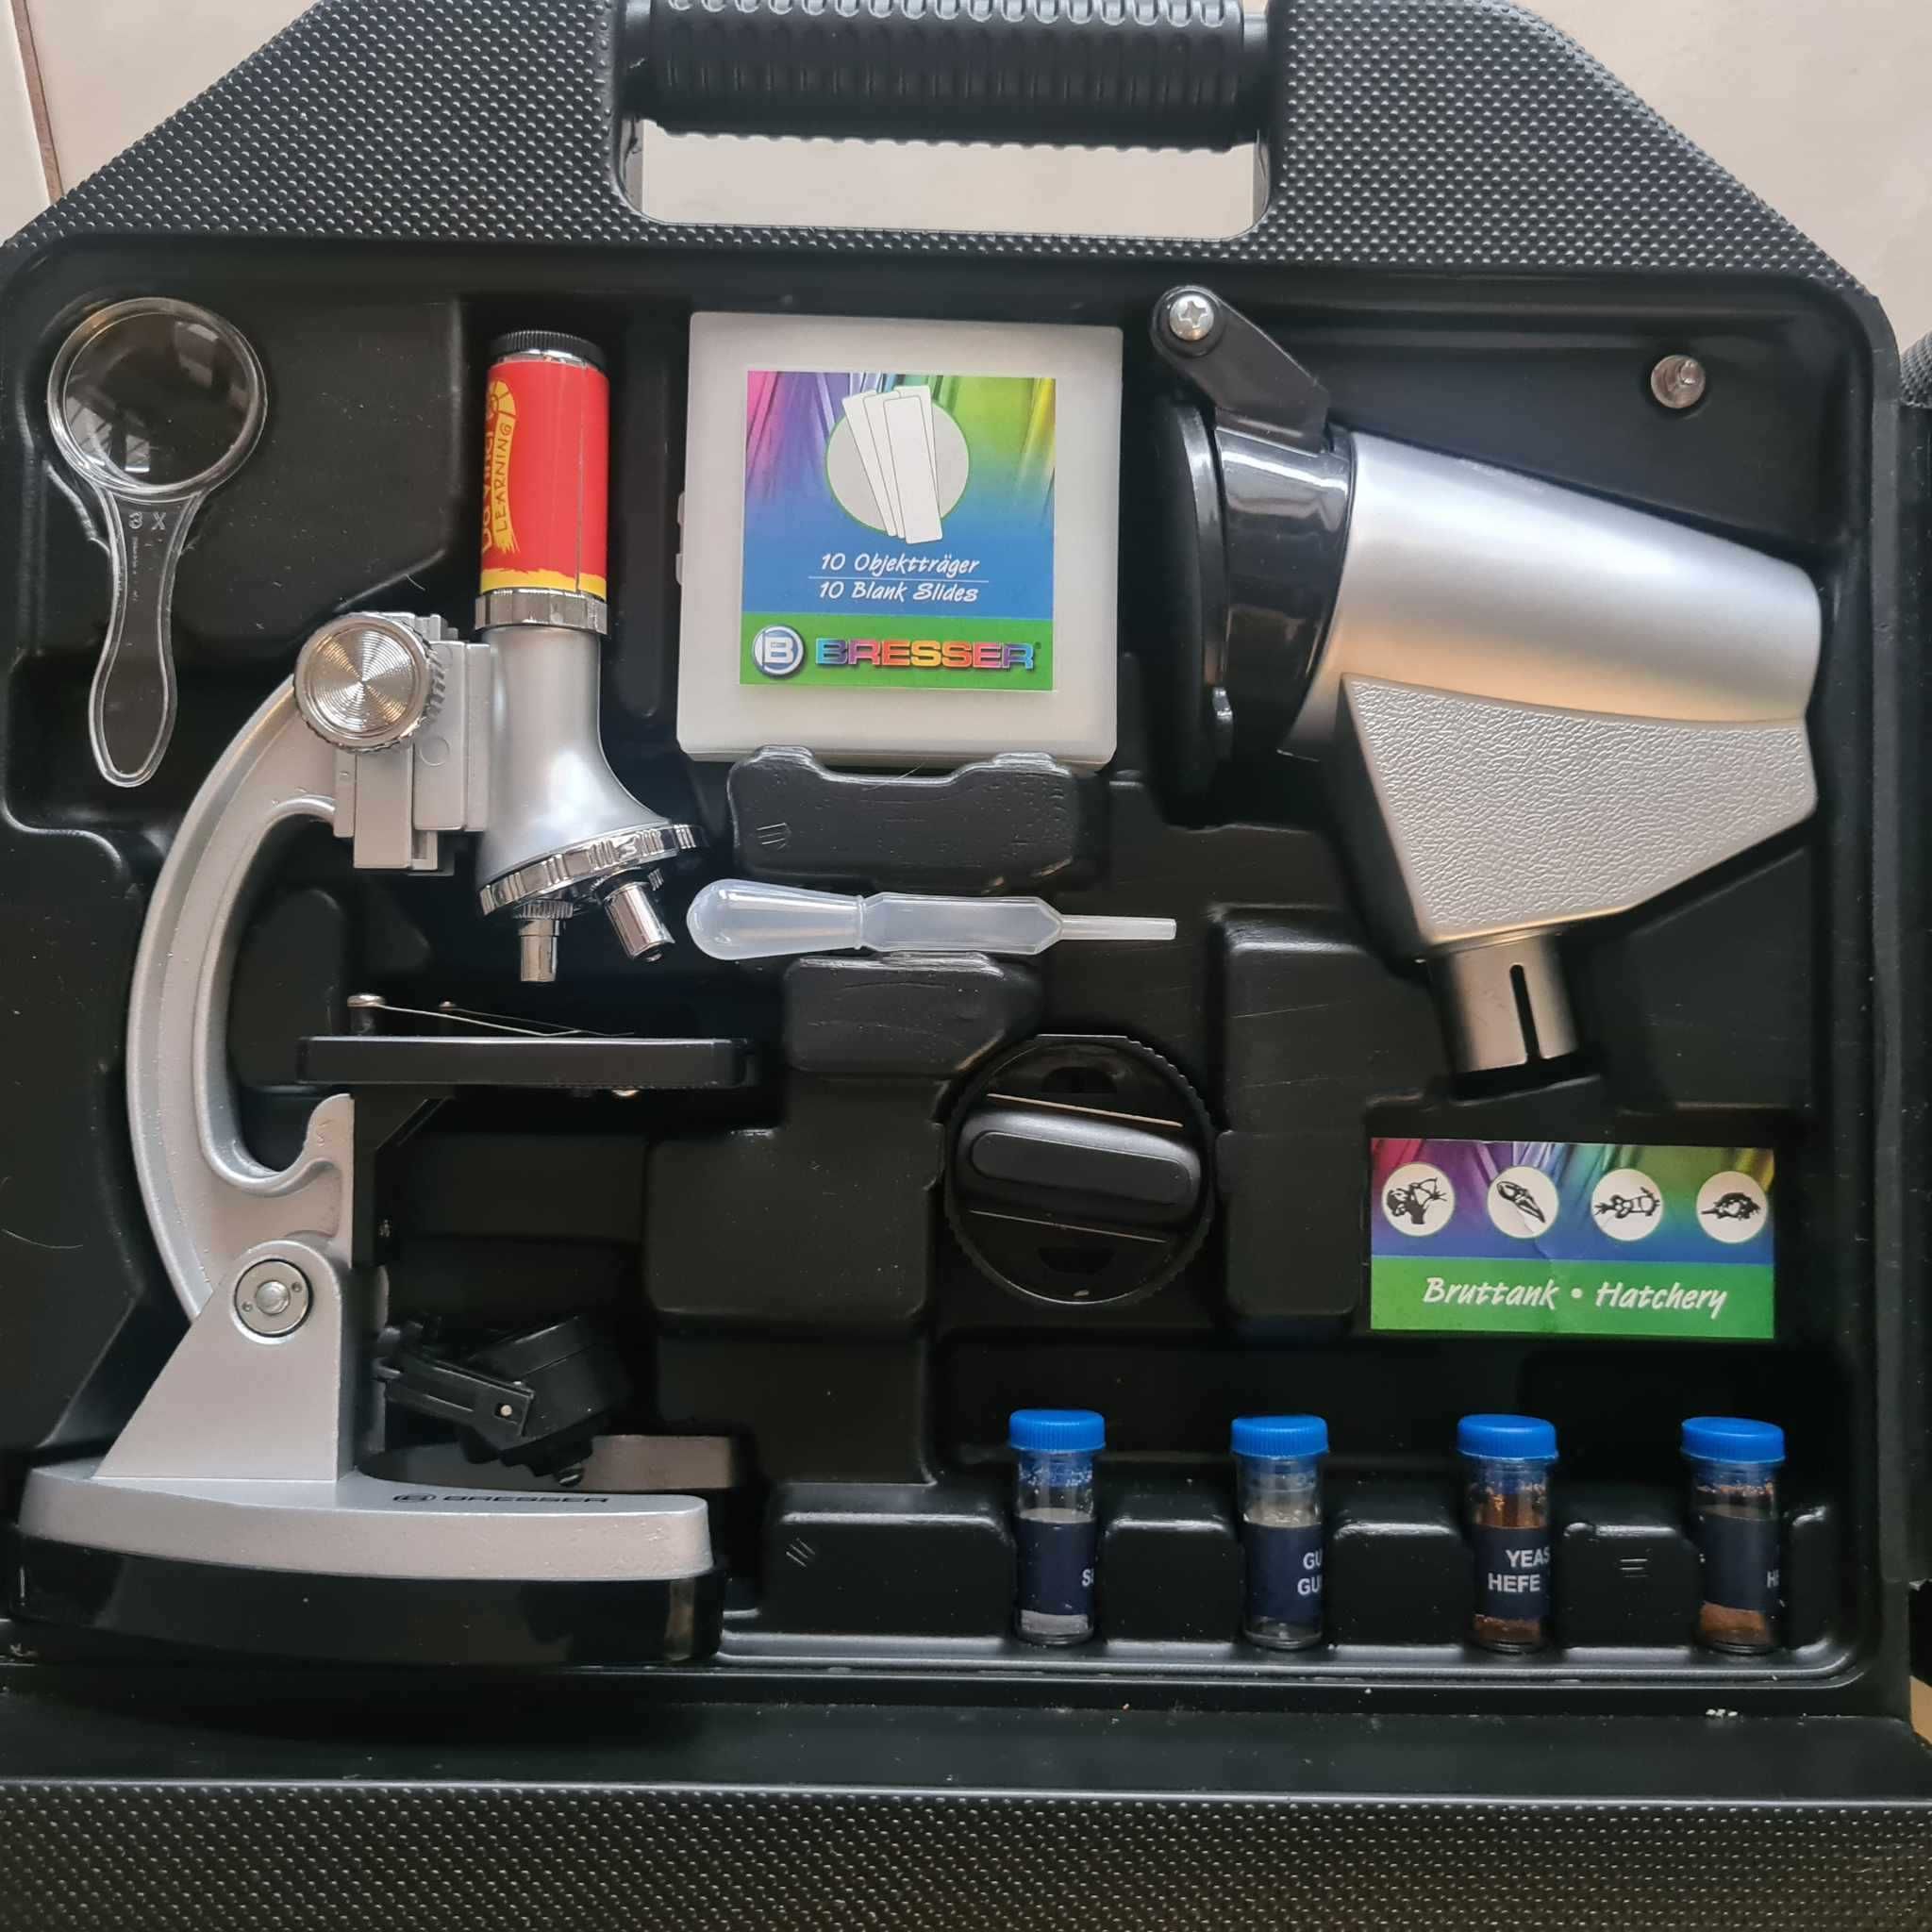 Microscop Bresser Junior 300-1200X, accesorii incluse, nou nefolosit